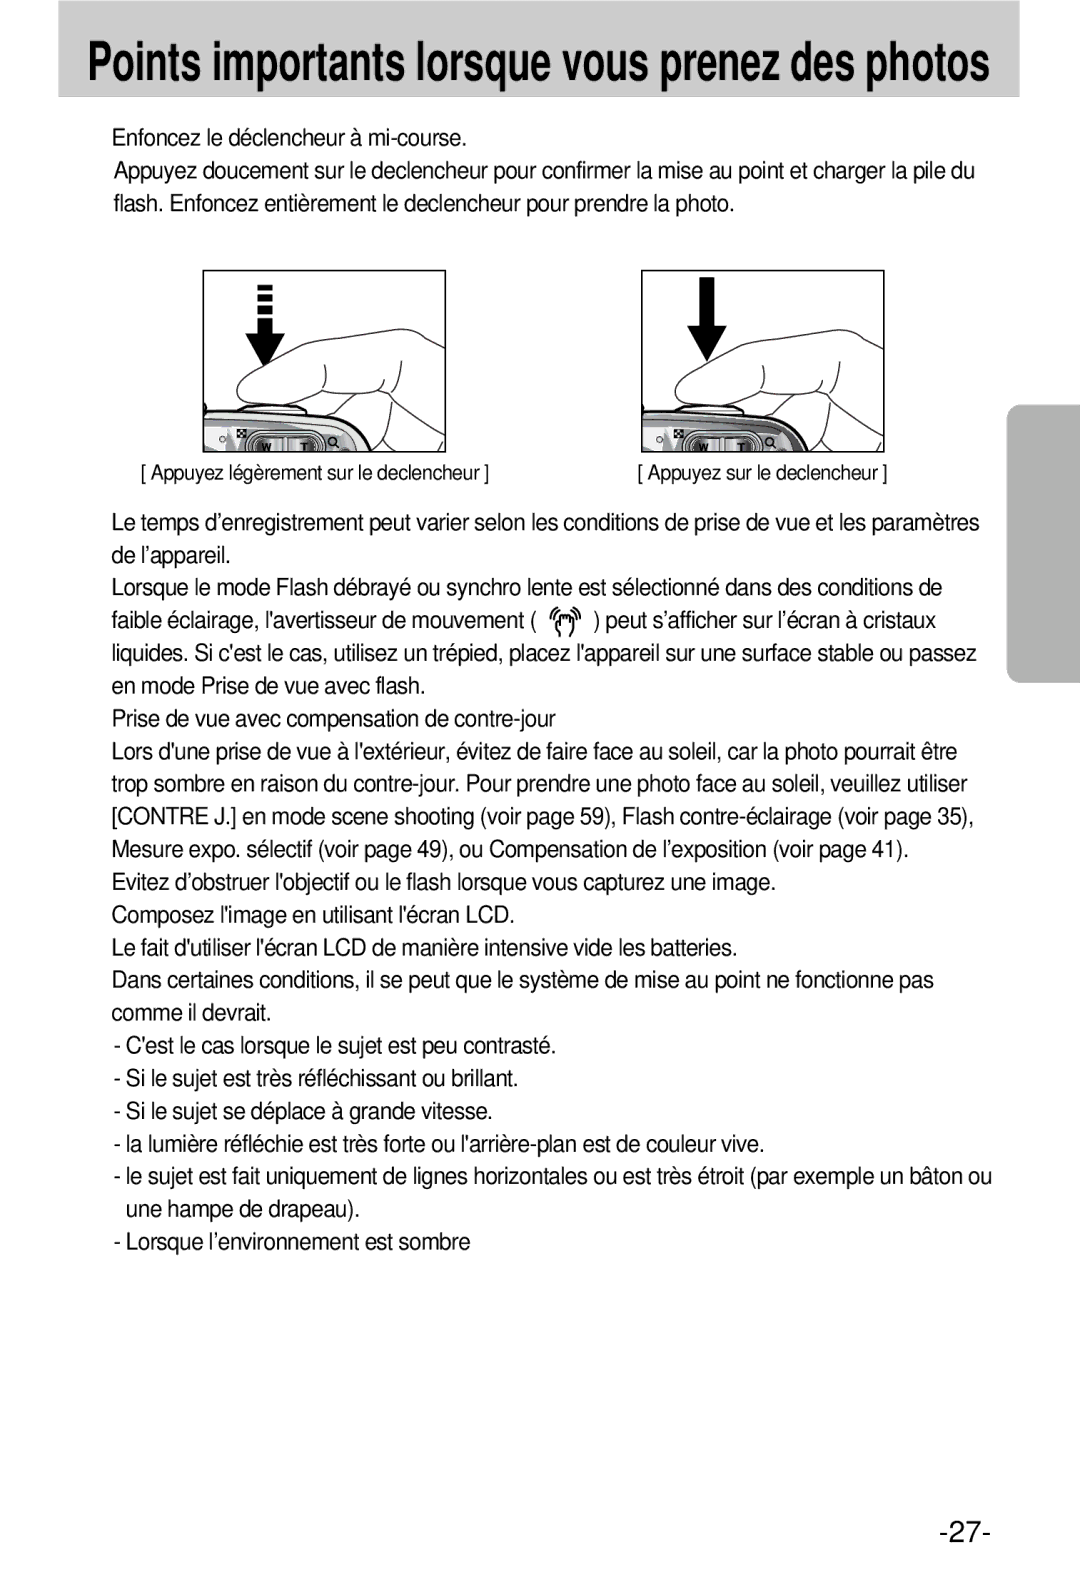 Samsung EC-V800ZSBA/FR manual Points importants lorsque vous prenez des photos, Enfoncez le déclencheur à mi-course 